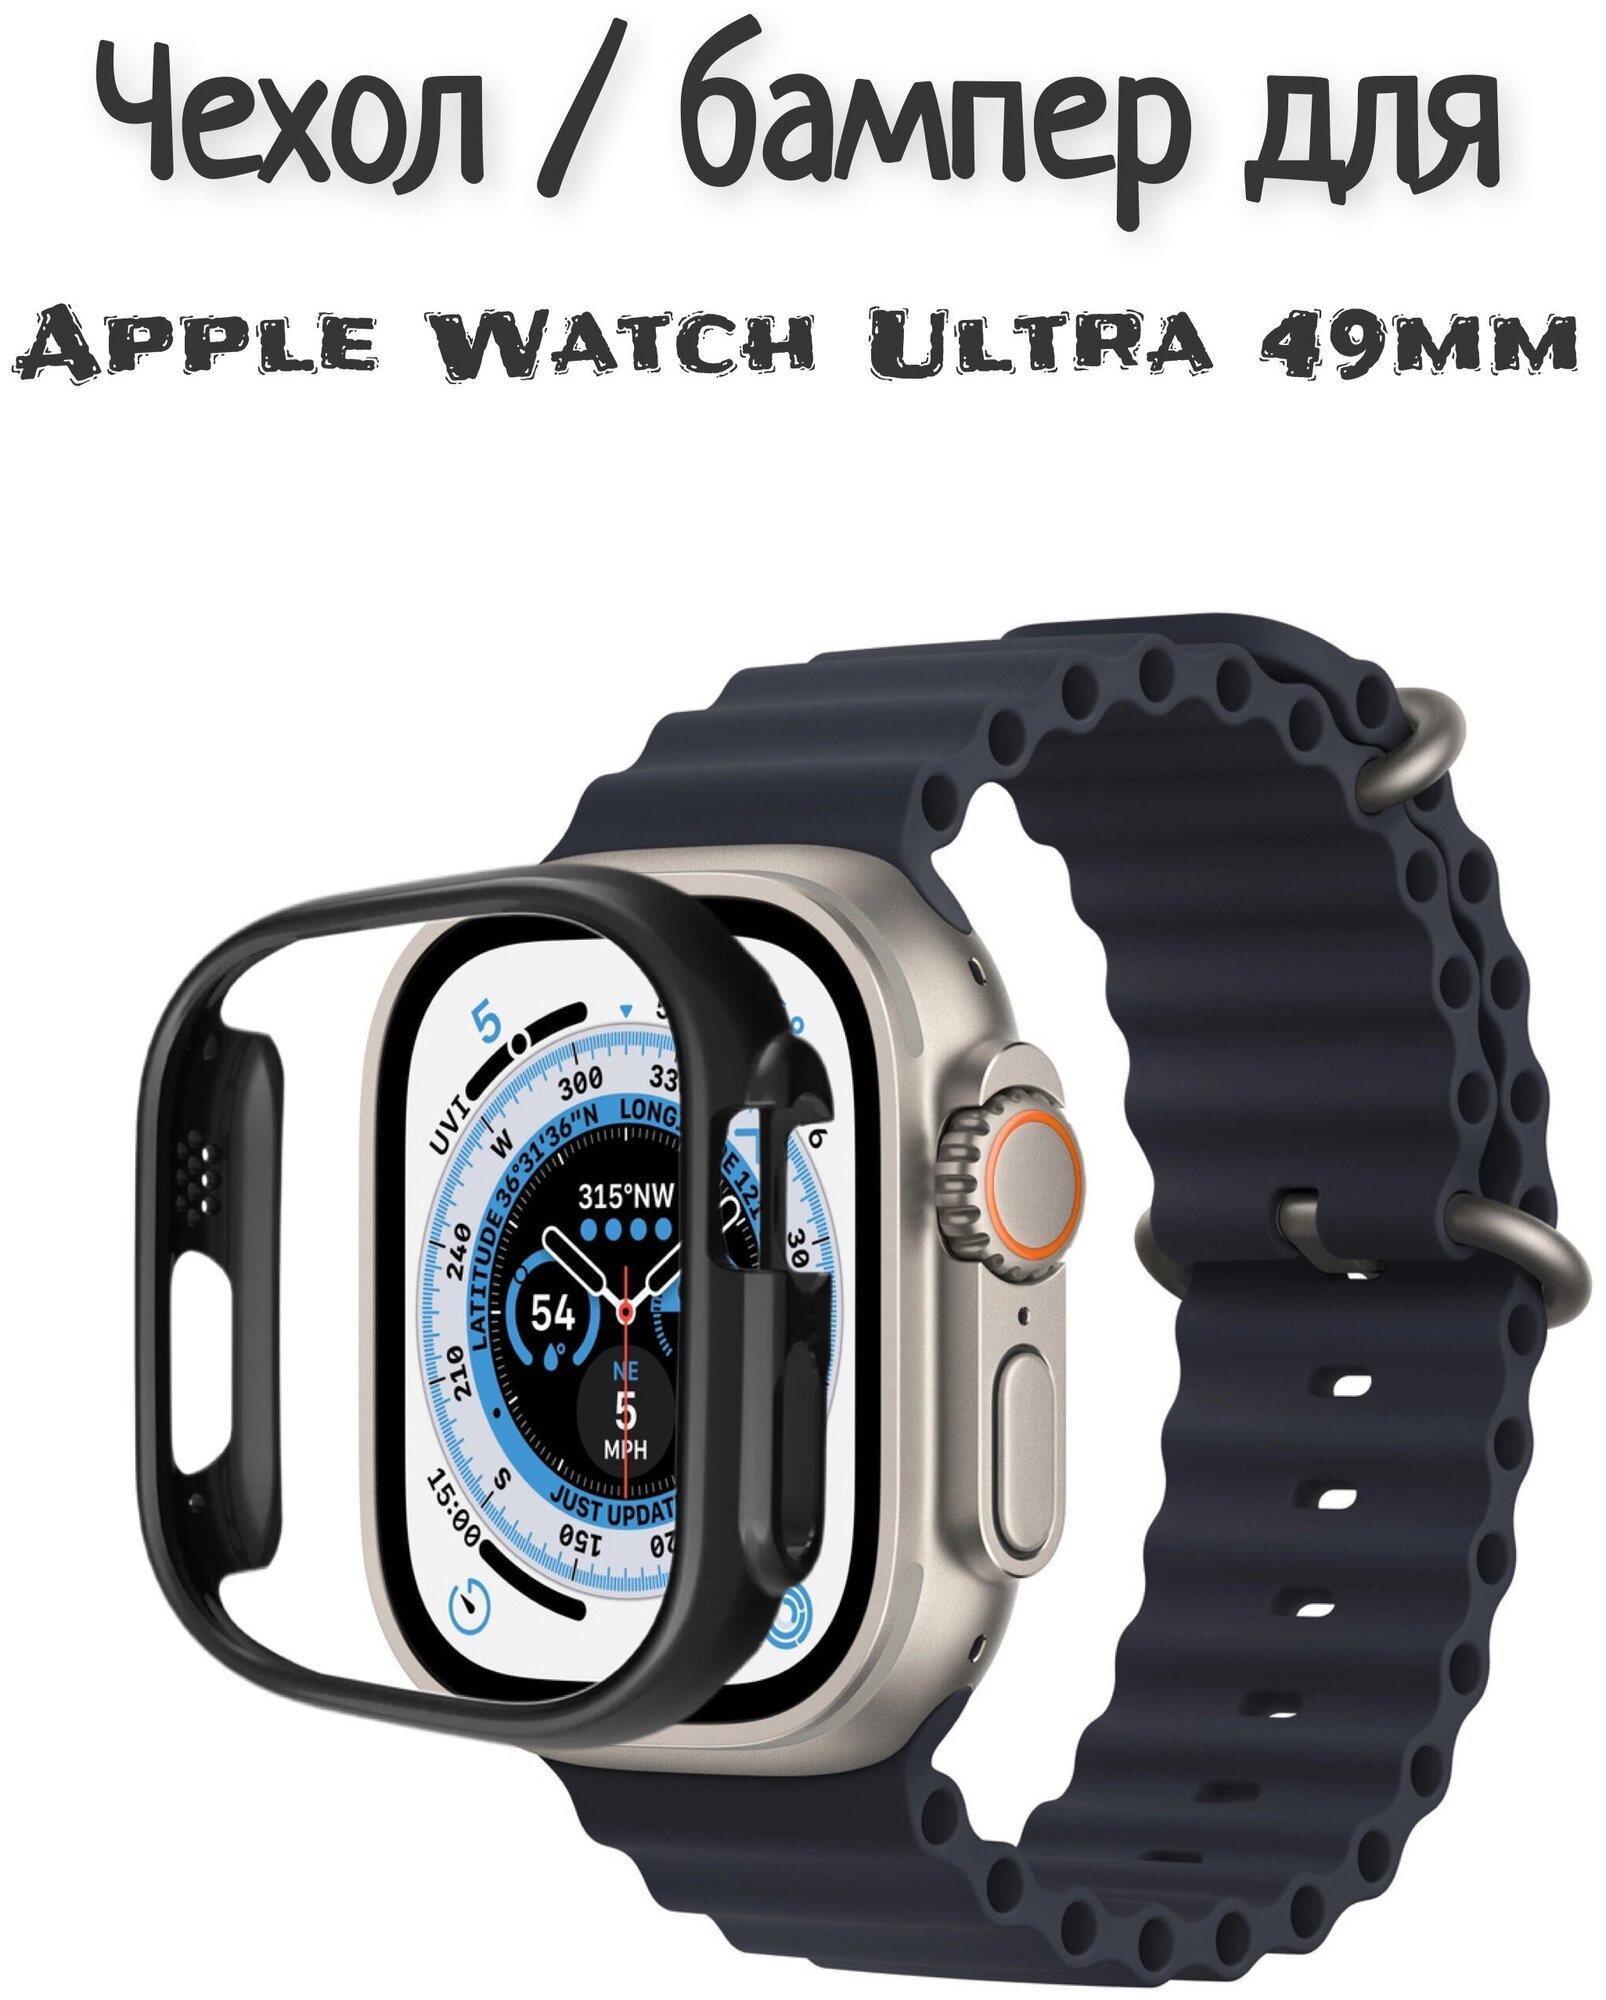 Чехол / бампер для Apple Watch Ultra 49 mm черный